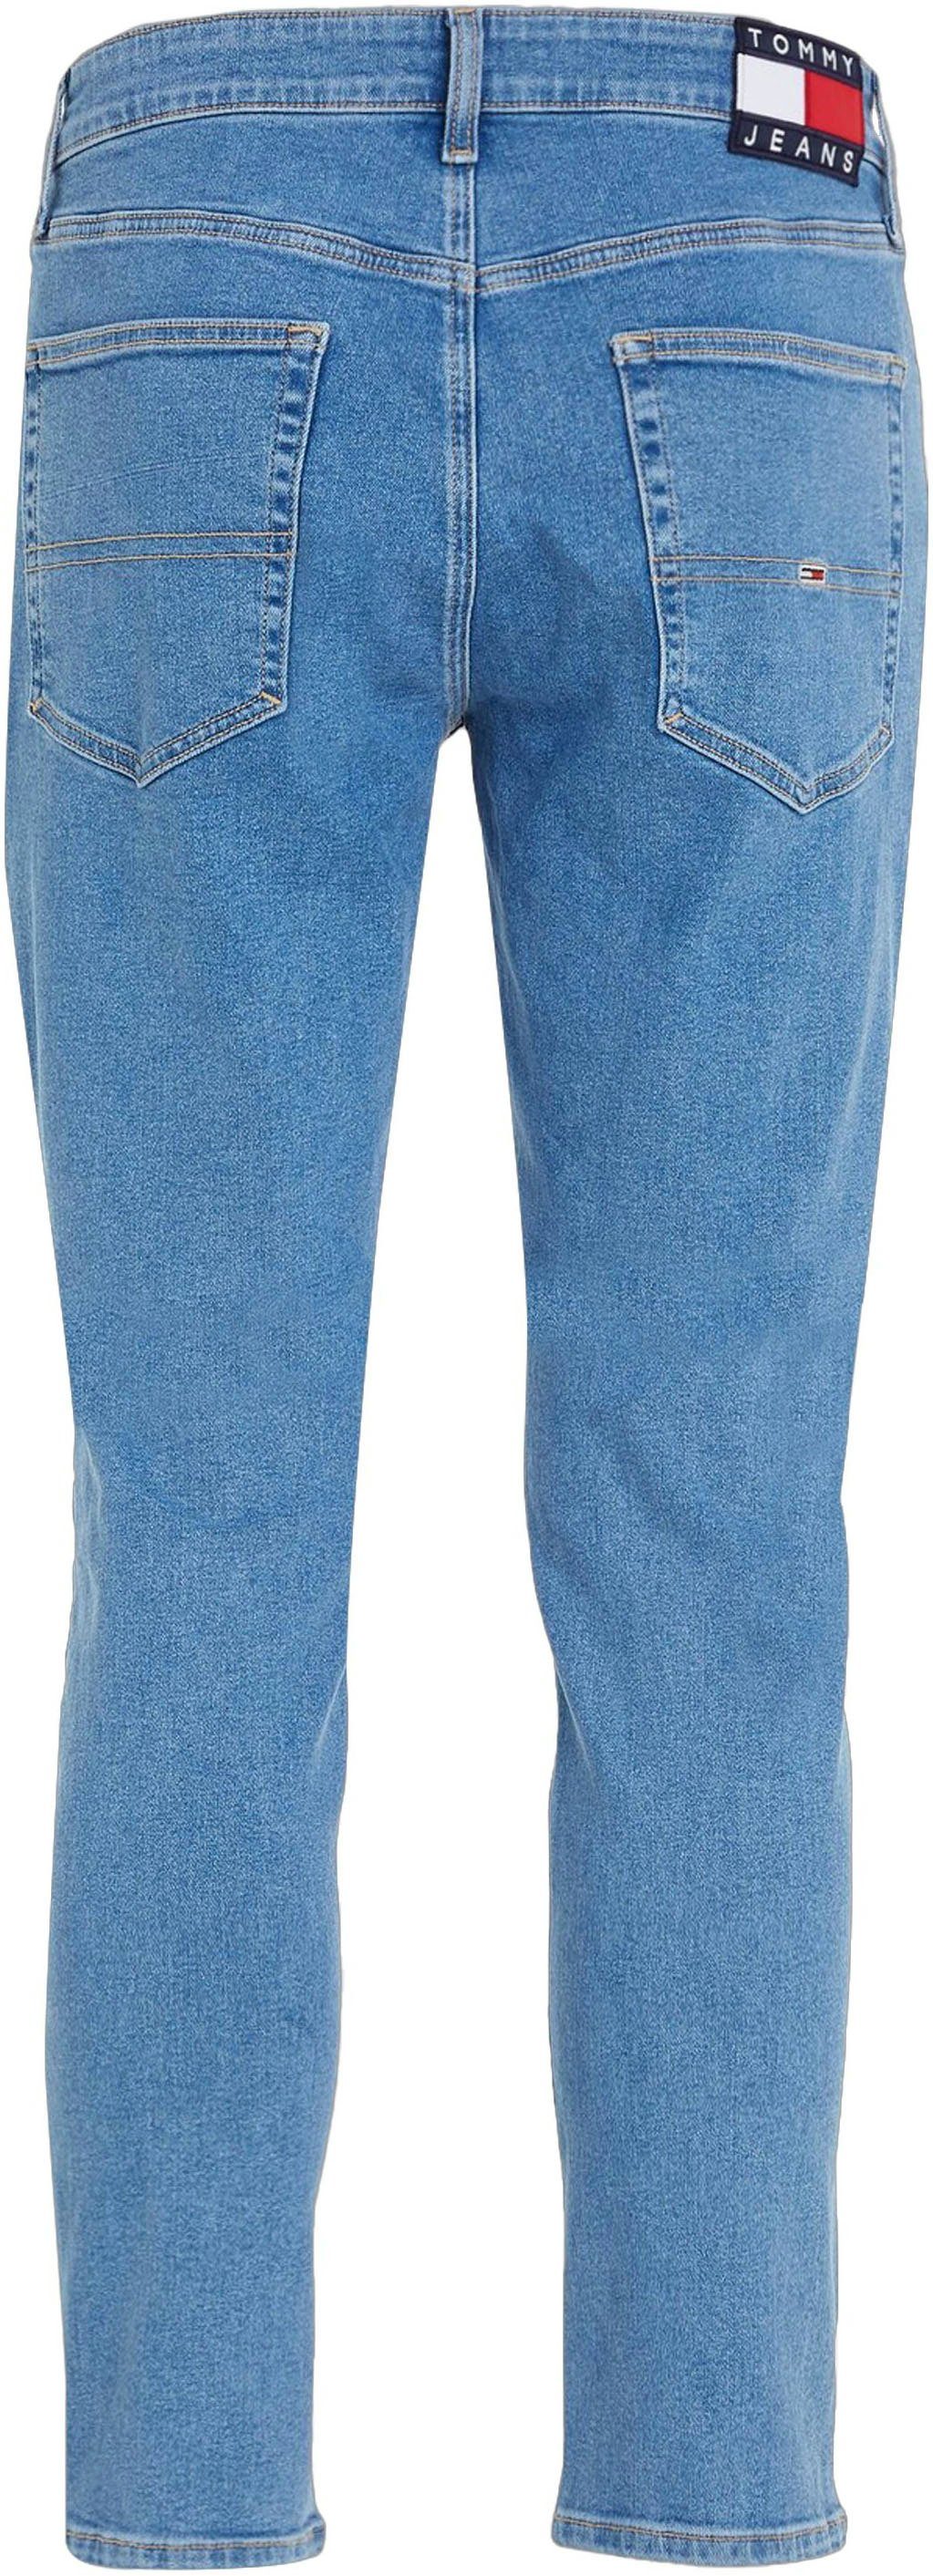 mit AUSTIN TPRD SLIM Tommy Slim-fit-Jeans blue Lederbadge Jeans